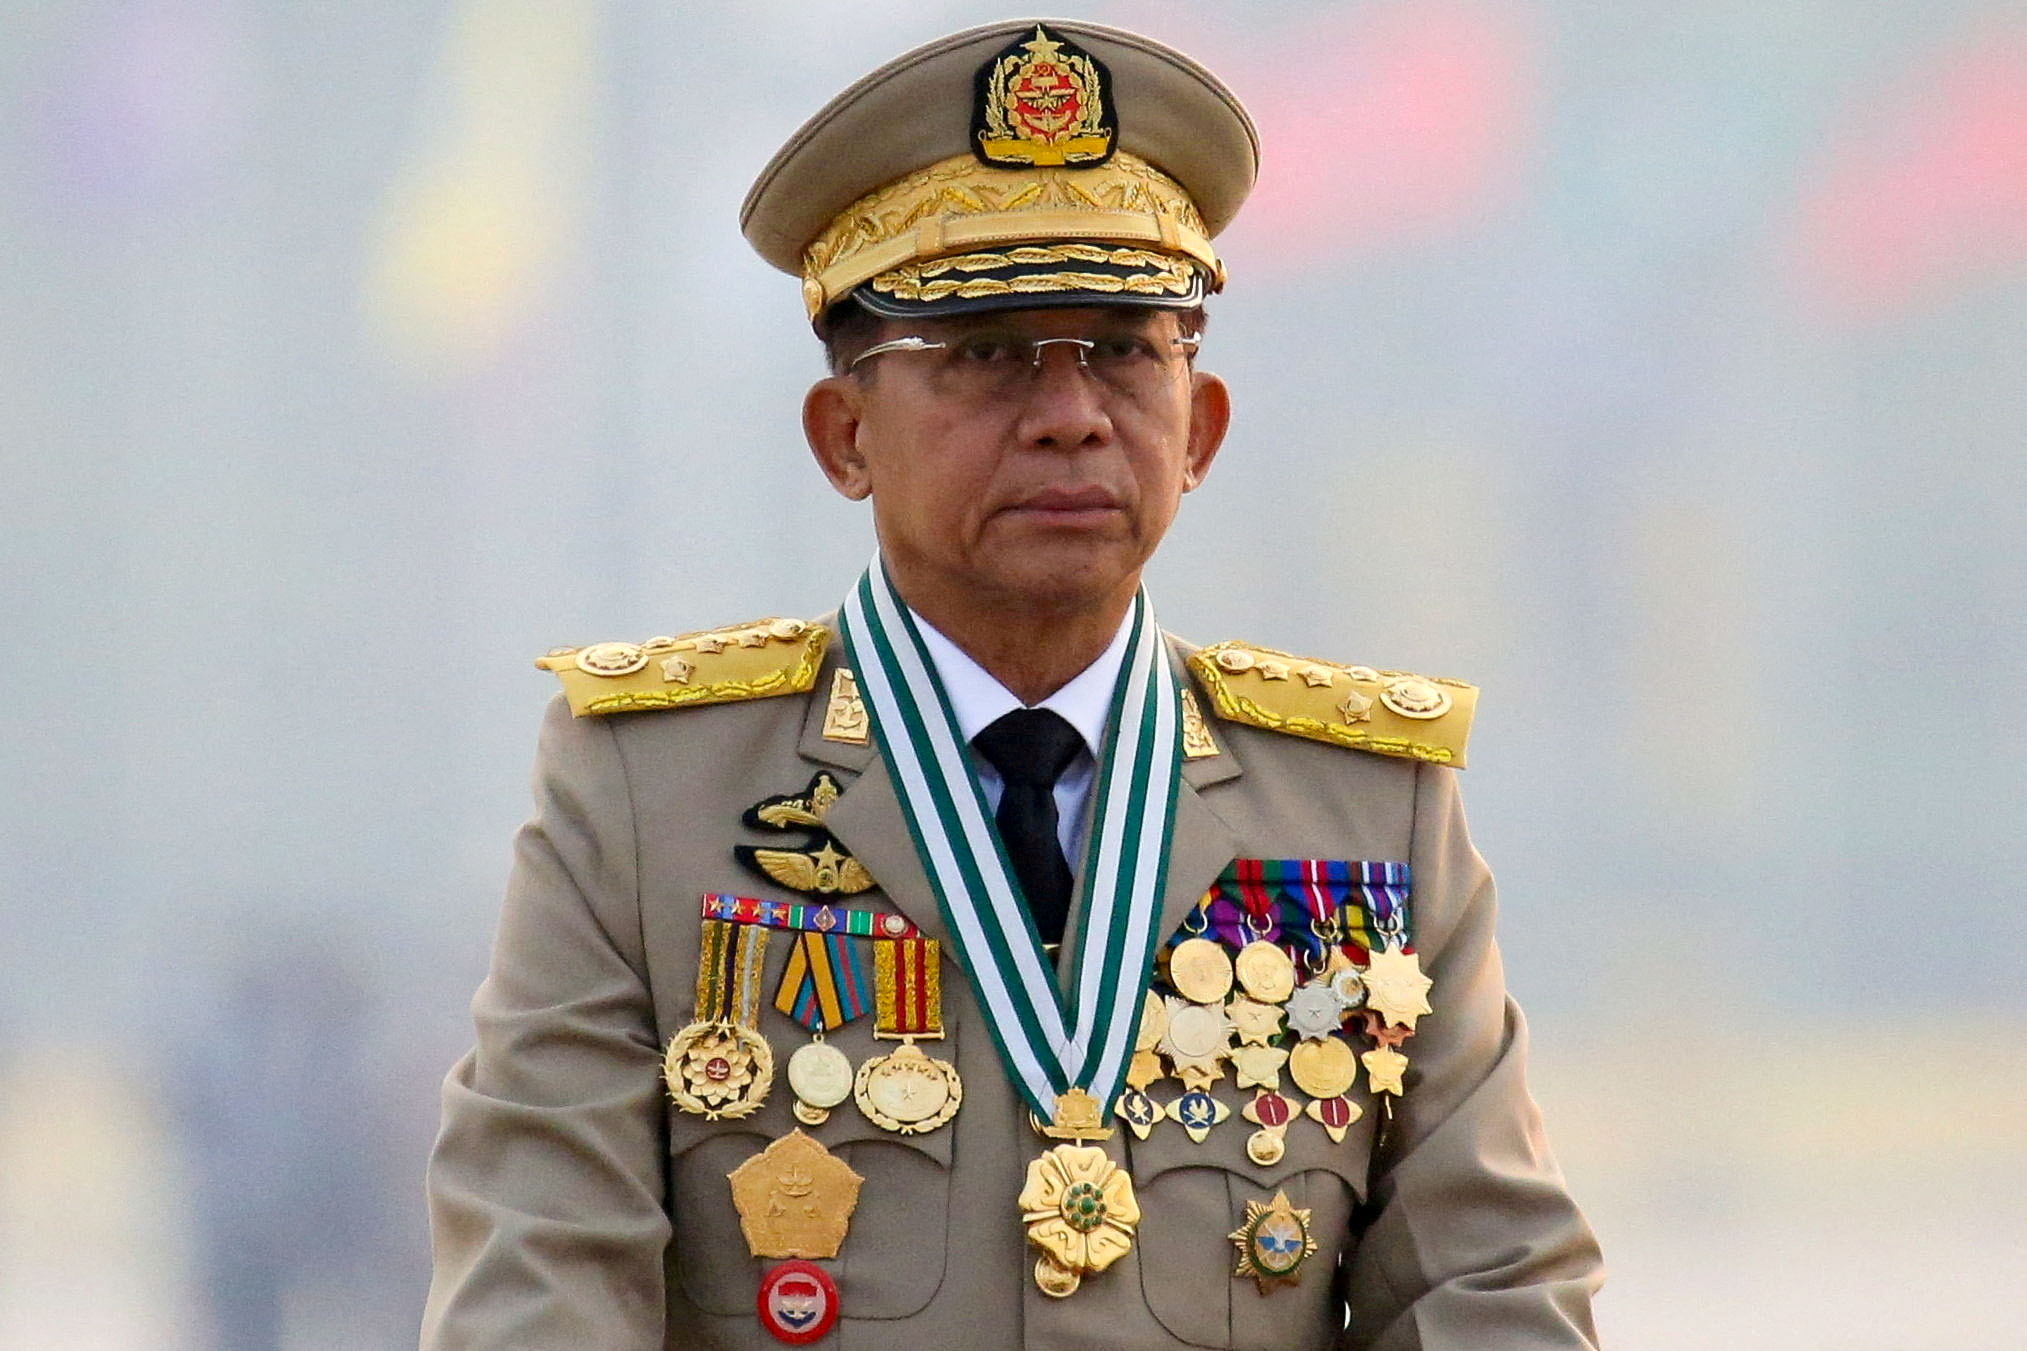 Çevrilişlə seçilmiş hökuməti devirən Myanma xuntasının başçısı baş general Min Aung Hlaing, Myanmarın Naypyitaw şəhərində Silahlı Qüvvələr Günündə ordu paradına rəhbərlik edir, 27 mart 2021. REUTERS/Stringer